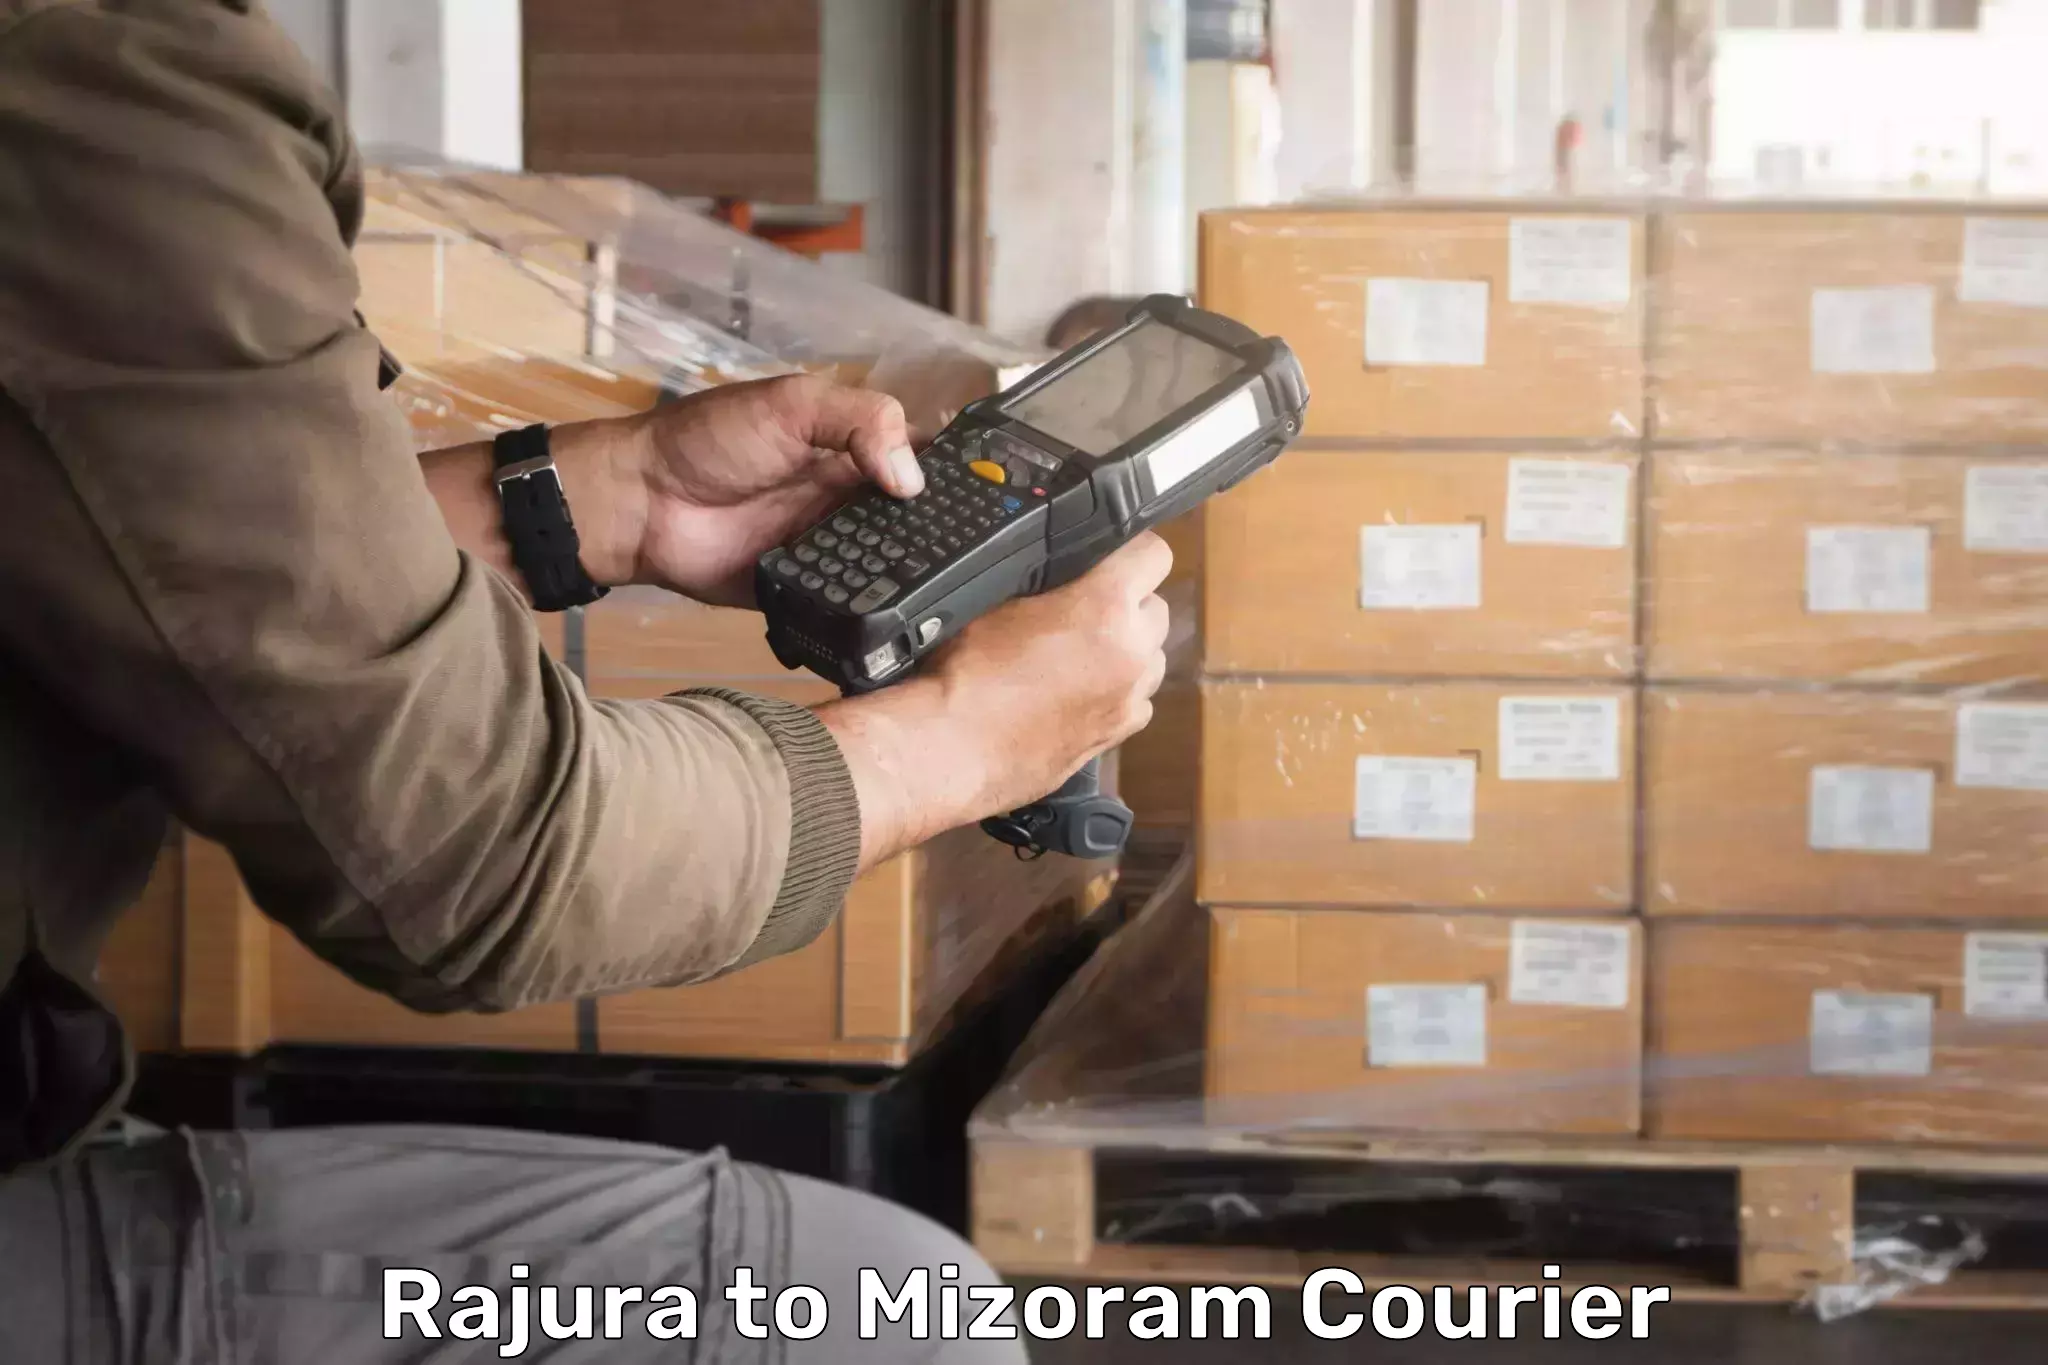 Specialized shipment handling Rajura to Mizoram